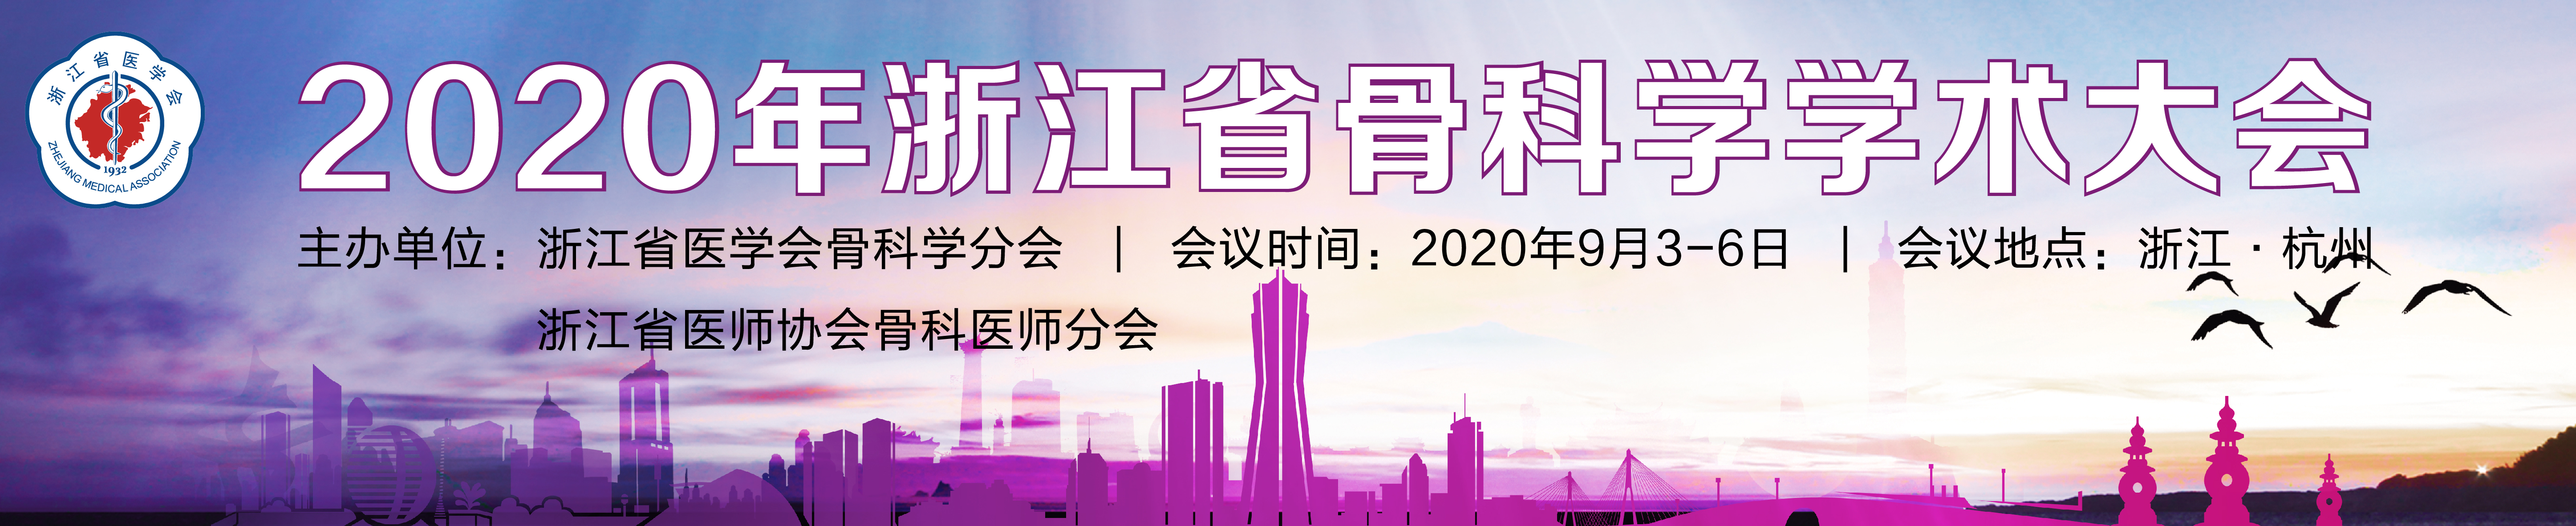 2020年浙江省骨科学学术大会